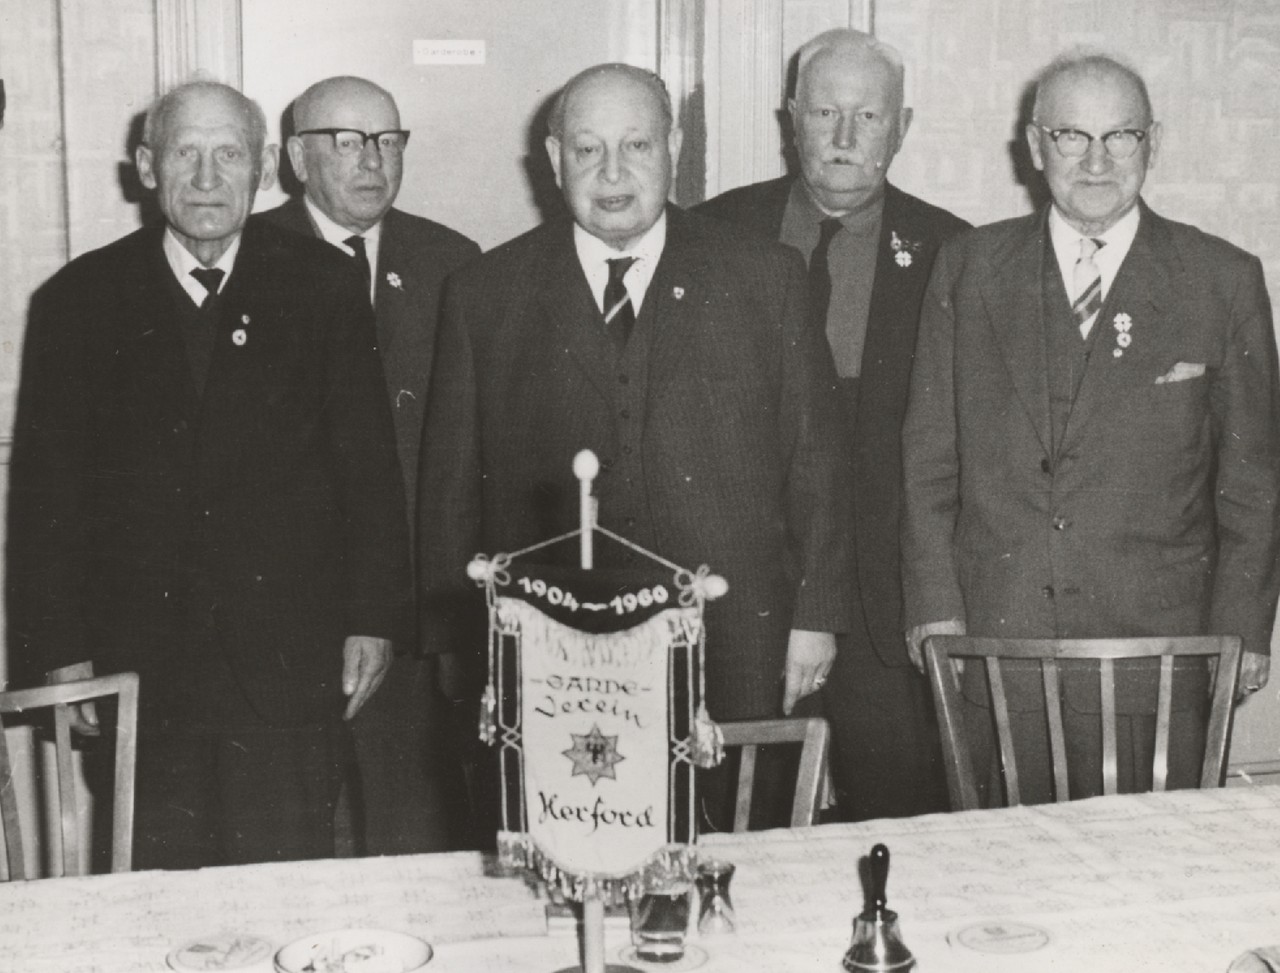 Der Vorstand des Garde-Vereins 1960. Foto Georg Heese (Kommunalarchiv Herford).